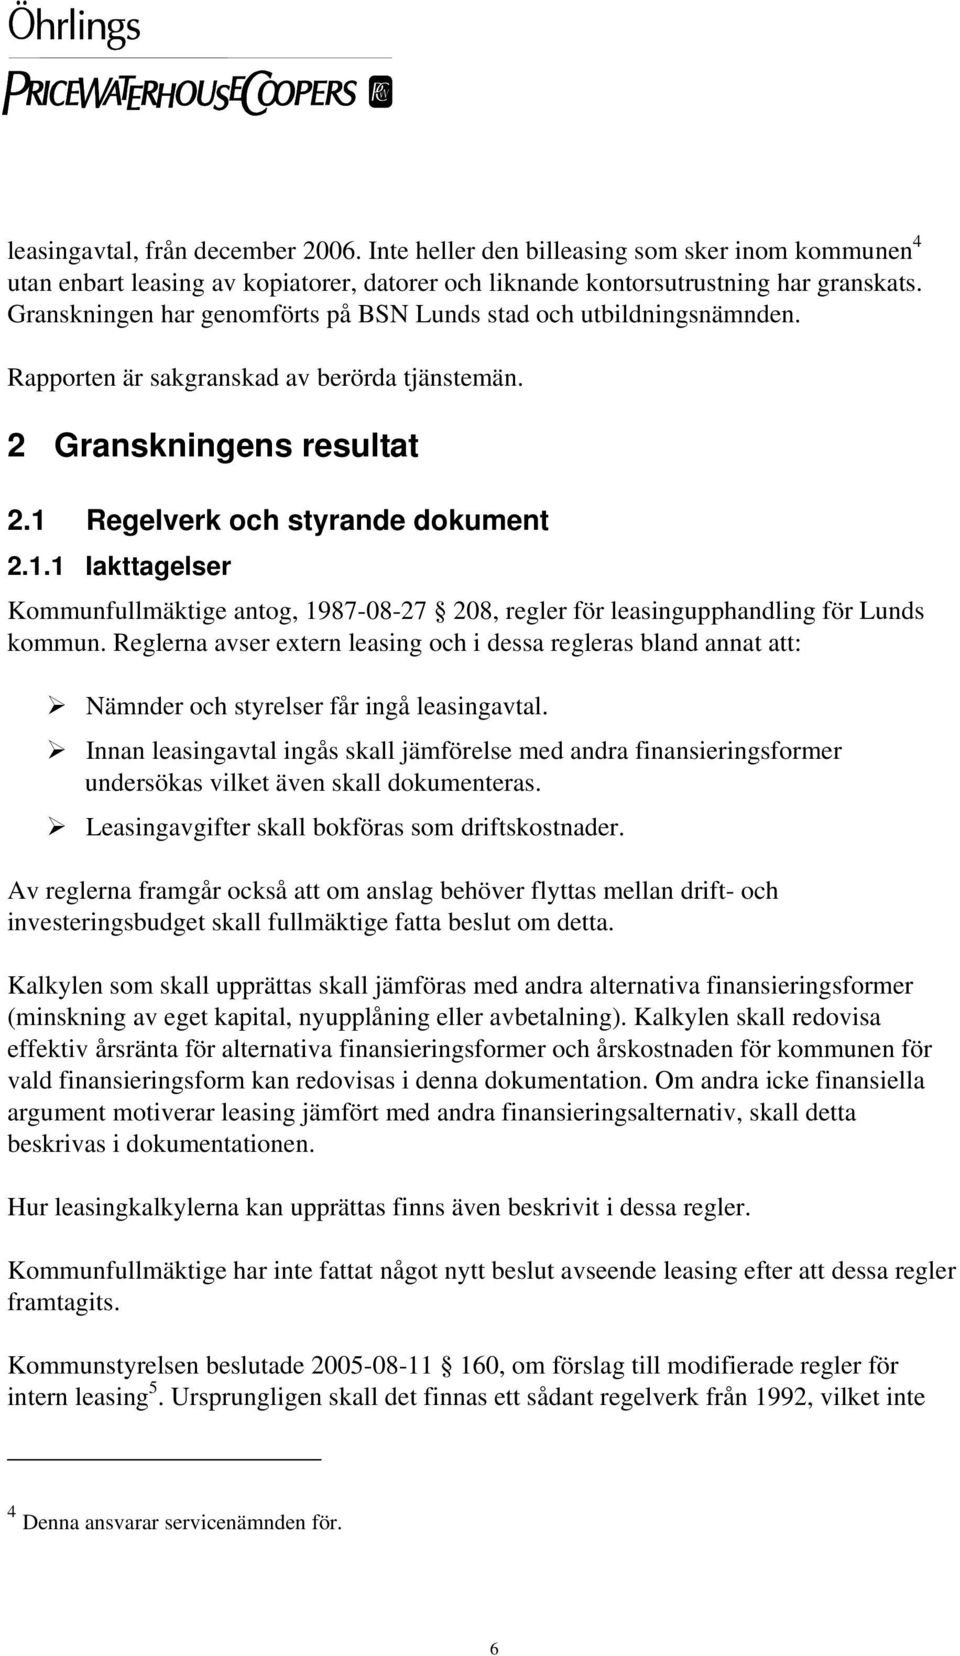 Regelverk och styrande dokument 2.1.1 Iakttagelser Kommunfullmäktige antog, 1987-08-27 208, regler för leasingupphandling för Lunds kommun.